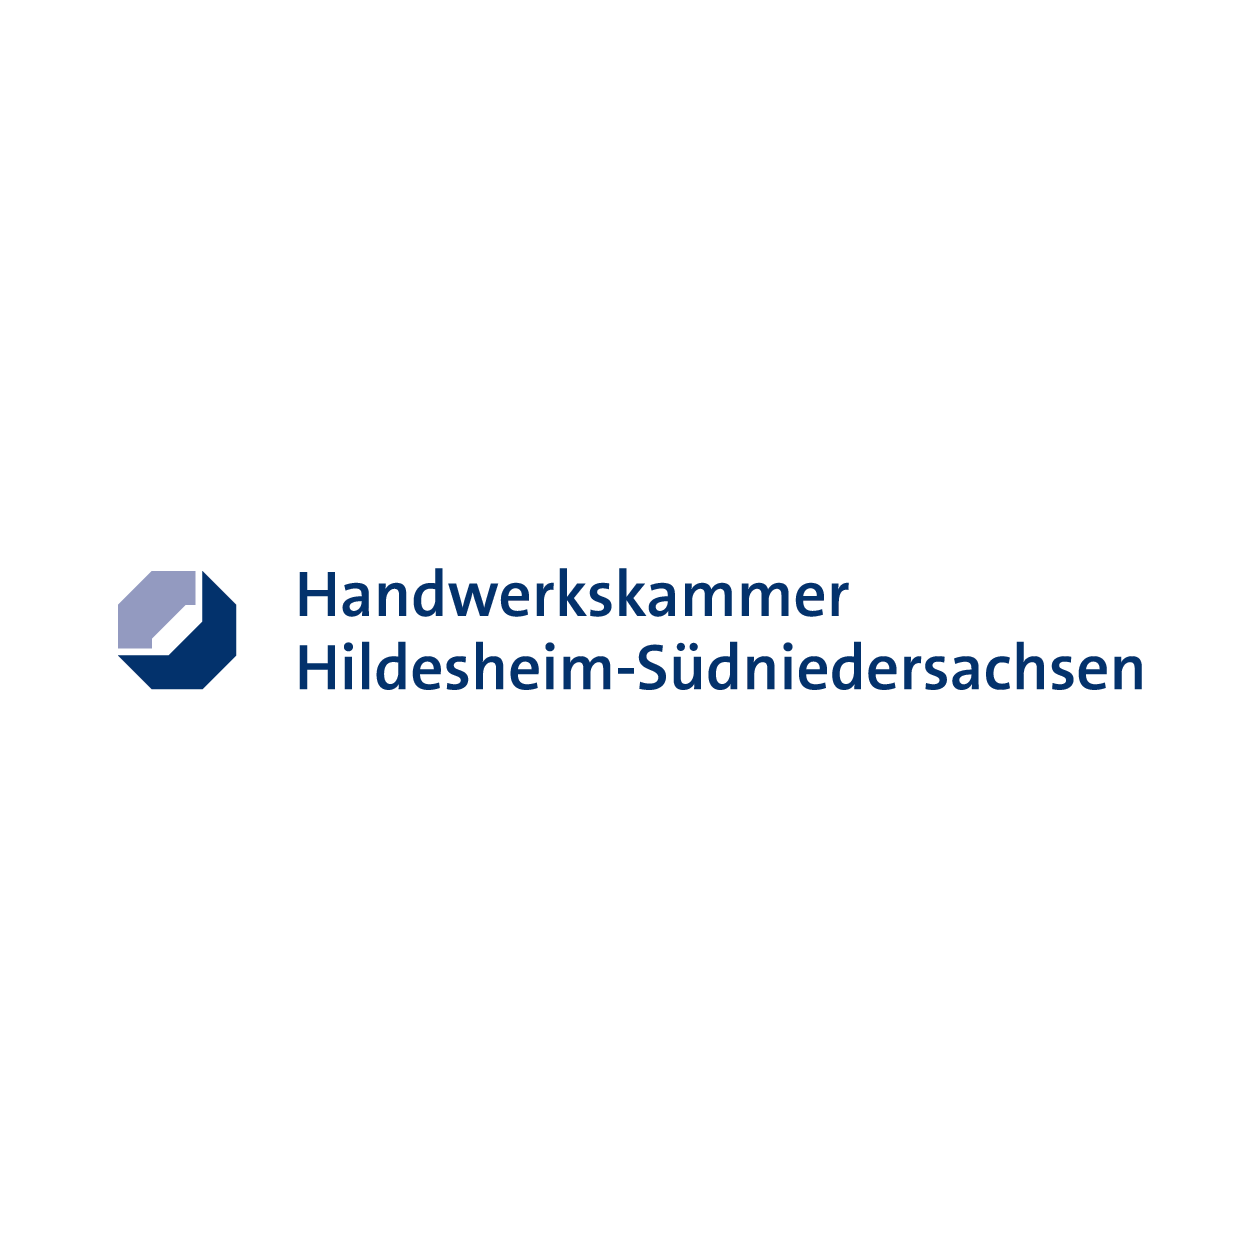 Handwerkskammer Hildesheim-Südniedersachsen Logo